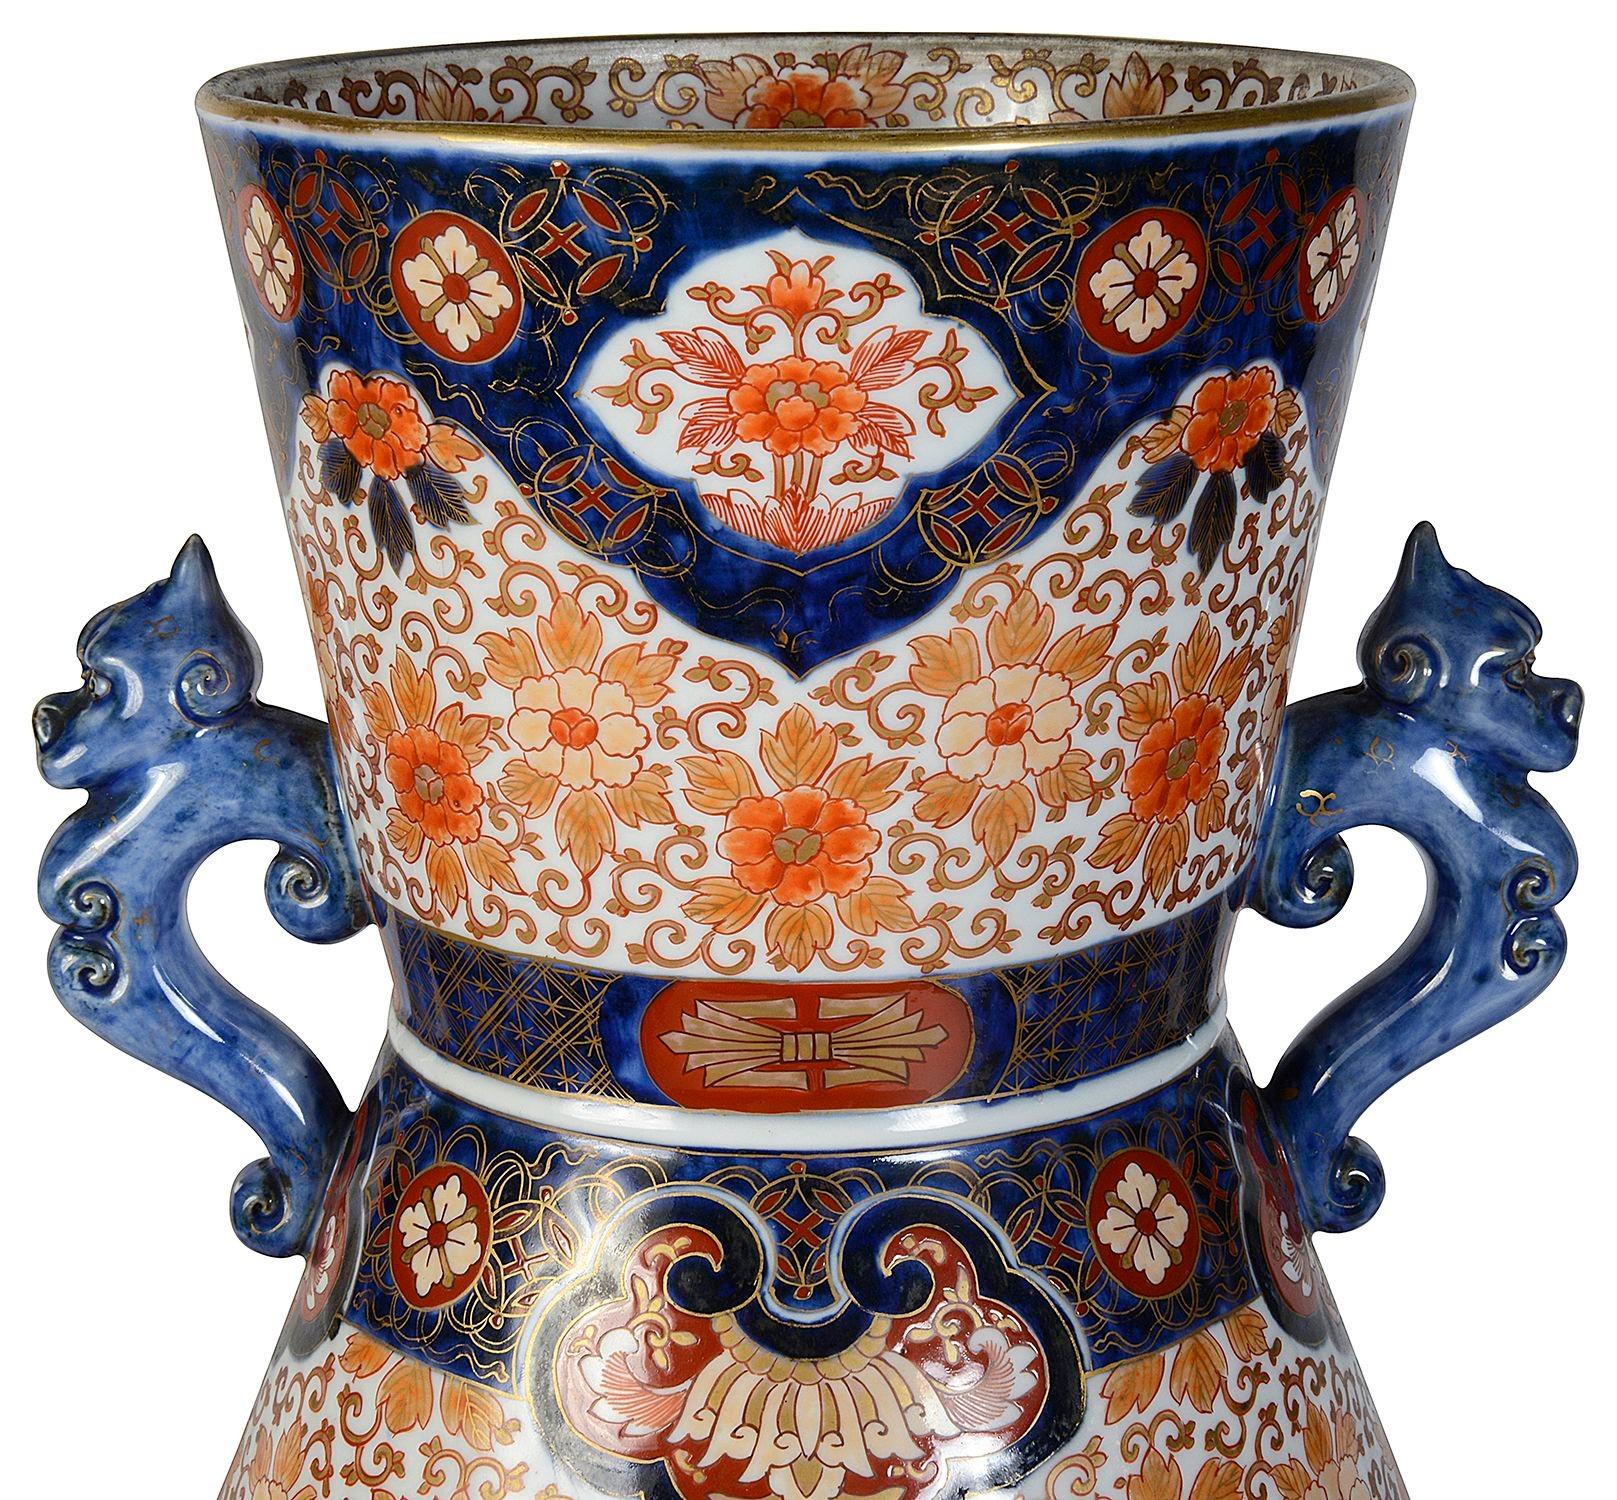 Eine japanische Imari-Porzellanvase von sehr guter Qualität aus dem späten 19. Jahrhundert, die wunderbare, kräftige klassische Imari-Farben in Blau, Orange und Gold aufweist.
Der Grund mit klassischem Motivdekor und handgemalten Tafeln, die